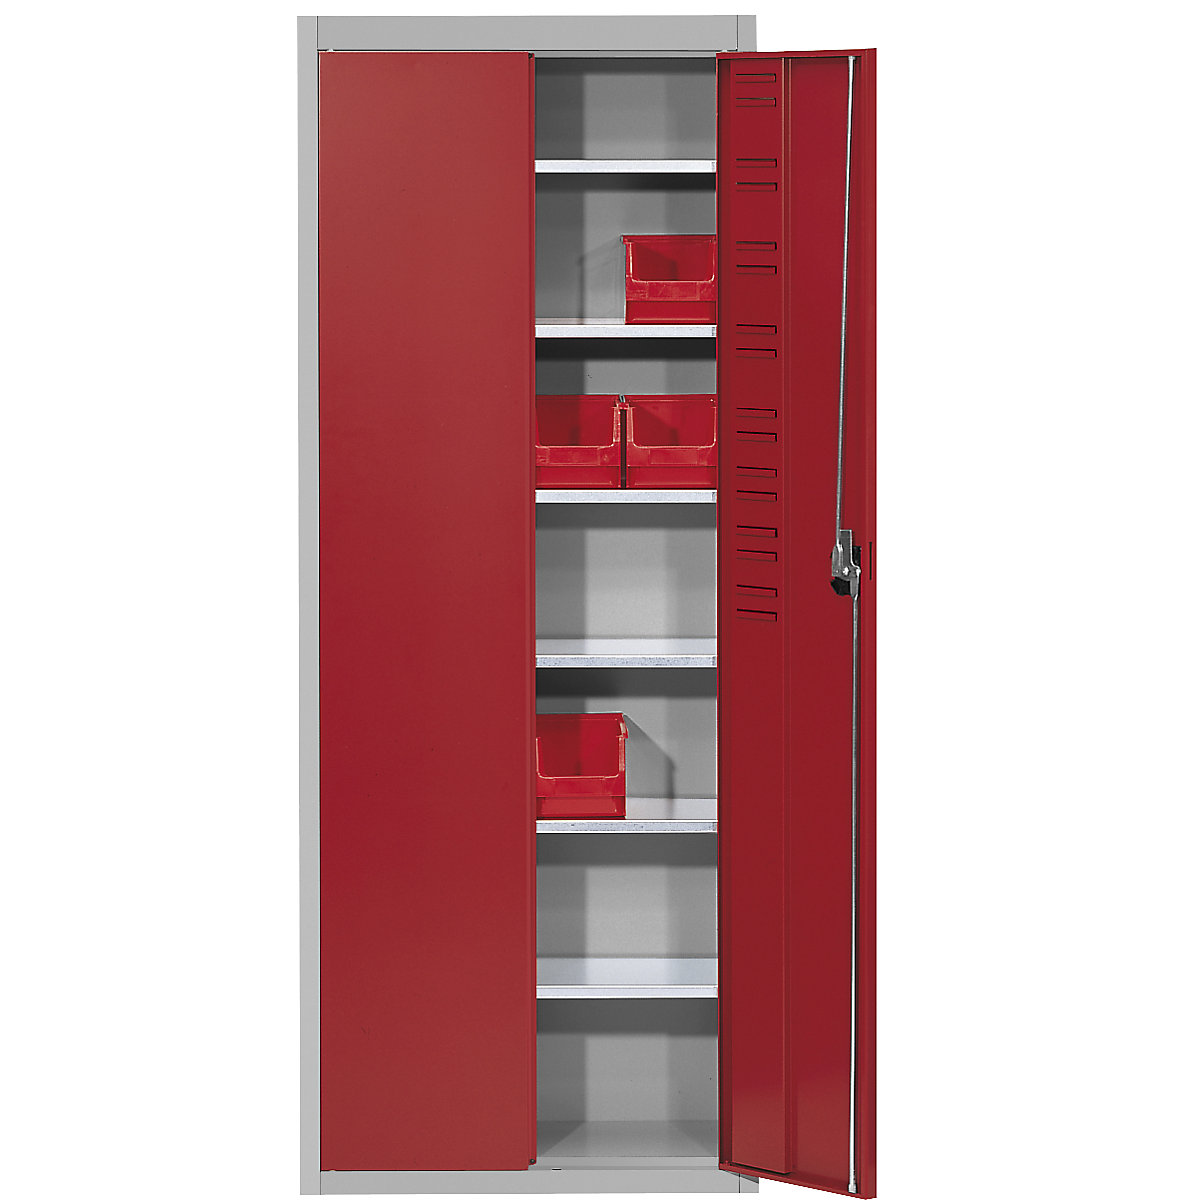 Armário de armazém, sem caixas de armazenagem à vista – mauser, AxLxP 1740 x 680 x 280 mm, duas cores, corpo em cinzento, portas em vermelho, a partir de 3 unid.-6